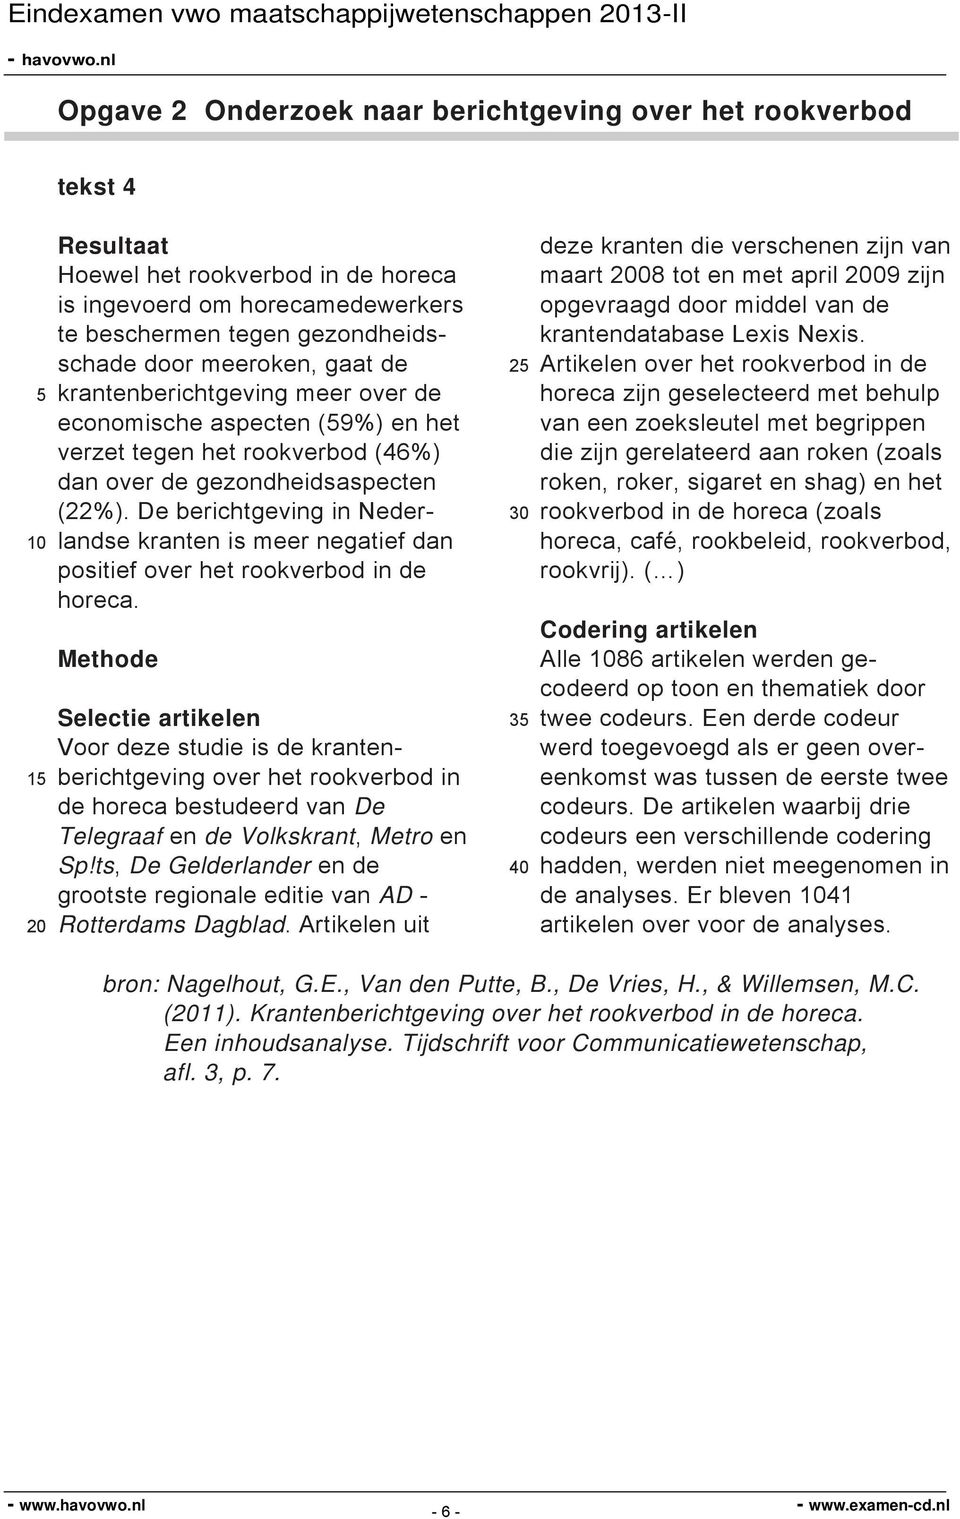 De berichtgeving in Nederlandse kranten is meer negatief dan positief over het rookverbod in de horeca.